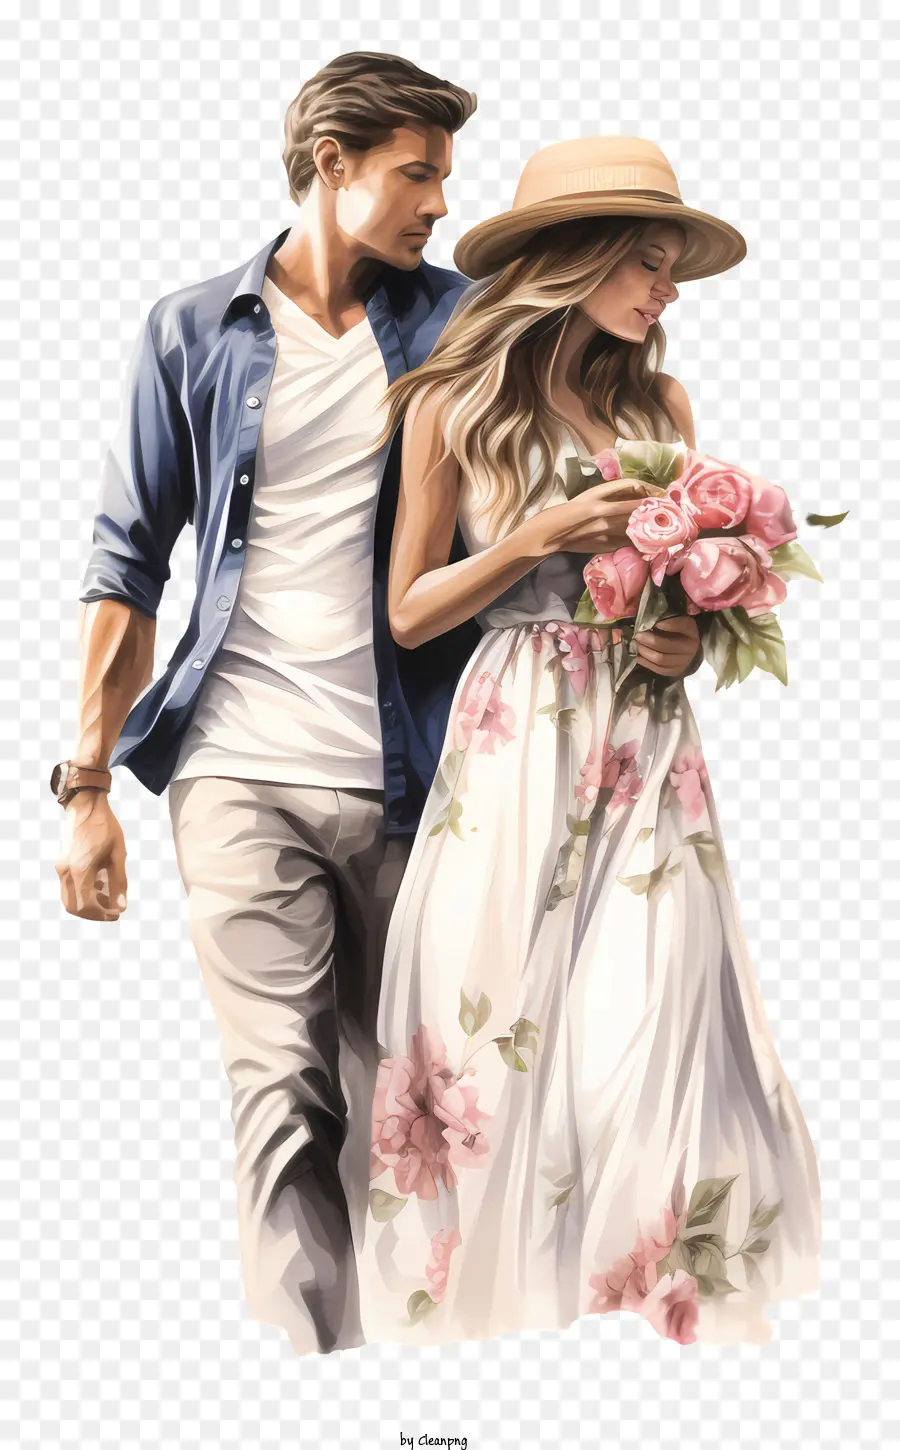 bó hoa - Cặp đôi trong màu trắng đi bộ với hoa về phía người xem